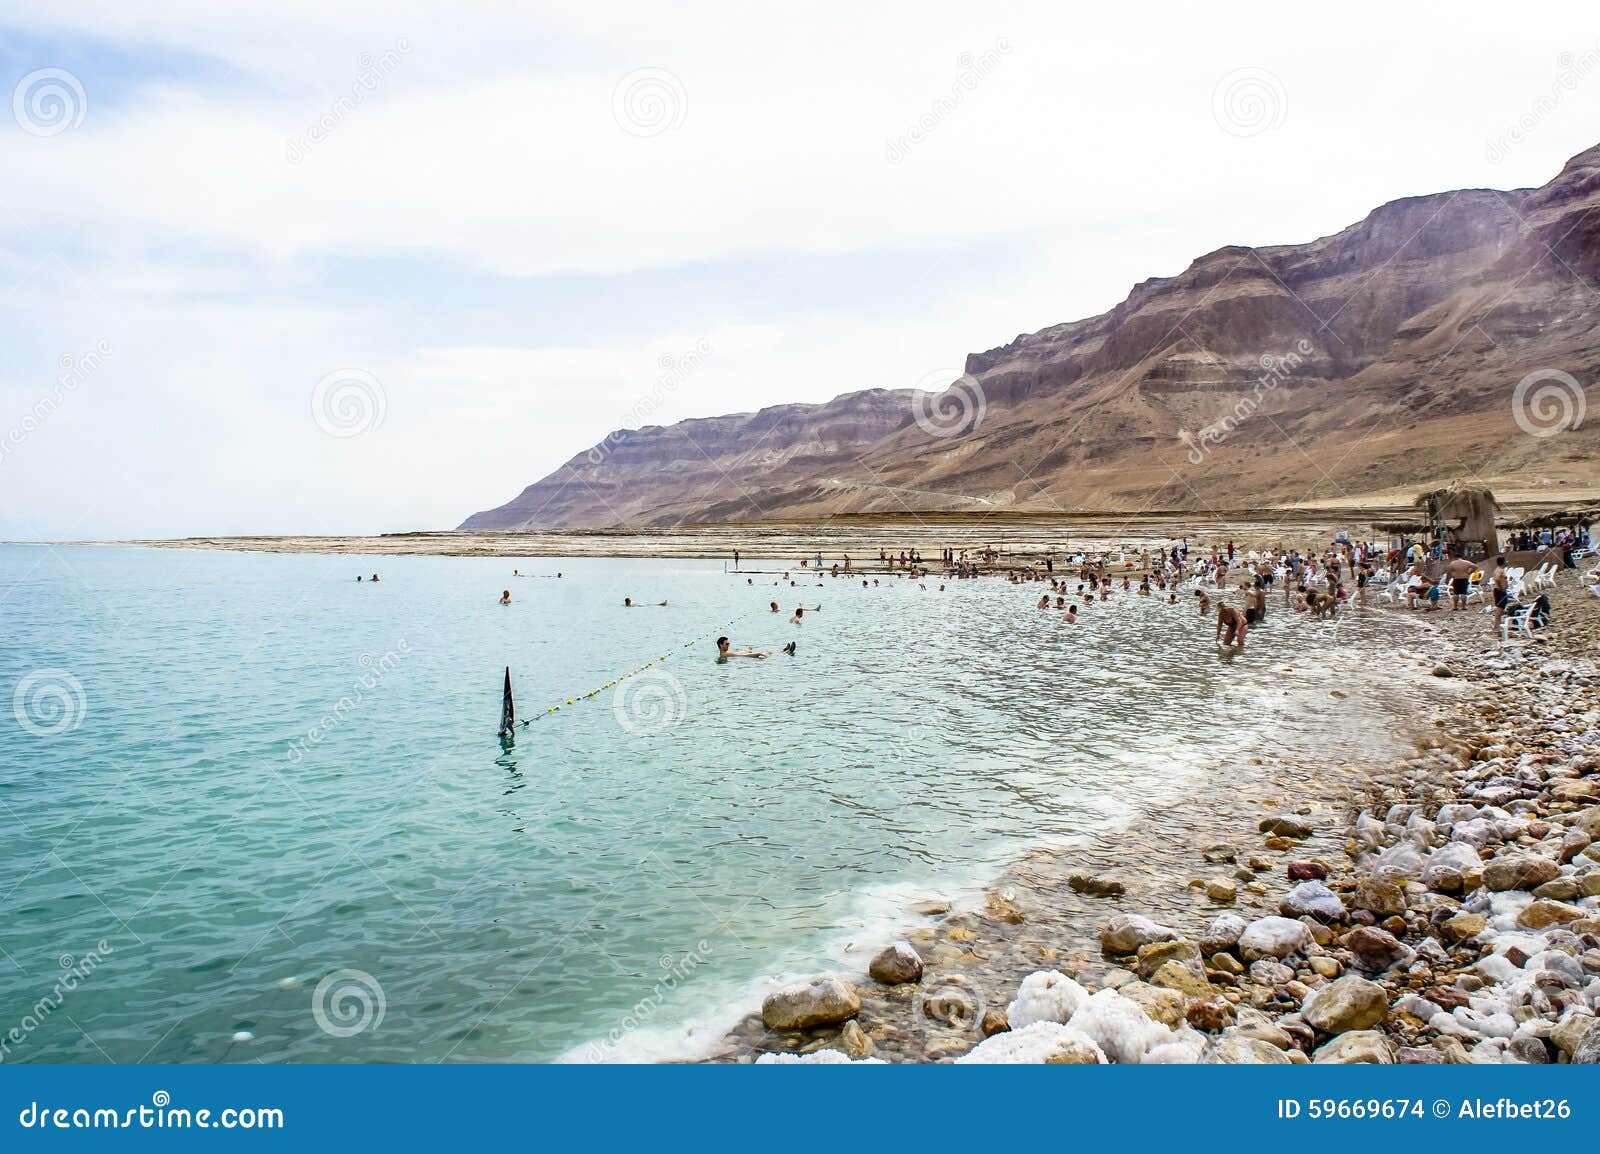 Nadada dos povos no Mar Morto. MAR MORTO, ISRAEL - 15 DE ABRIL: Os povos nadam no Mar Morto, pedras litorais cobertas com o sal, montanhas na distância, no Mar Morto, Israel o 15 de abril de 2014